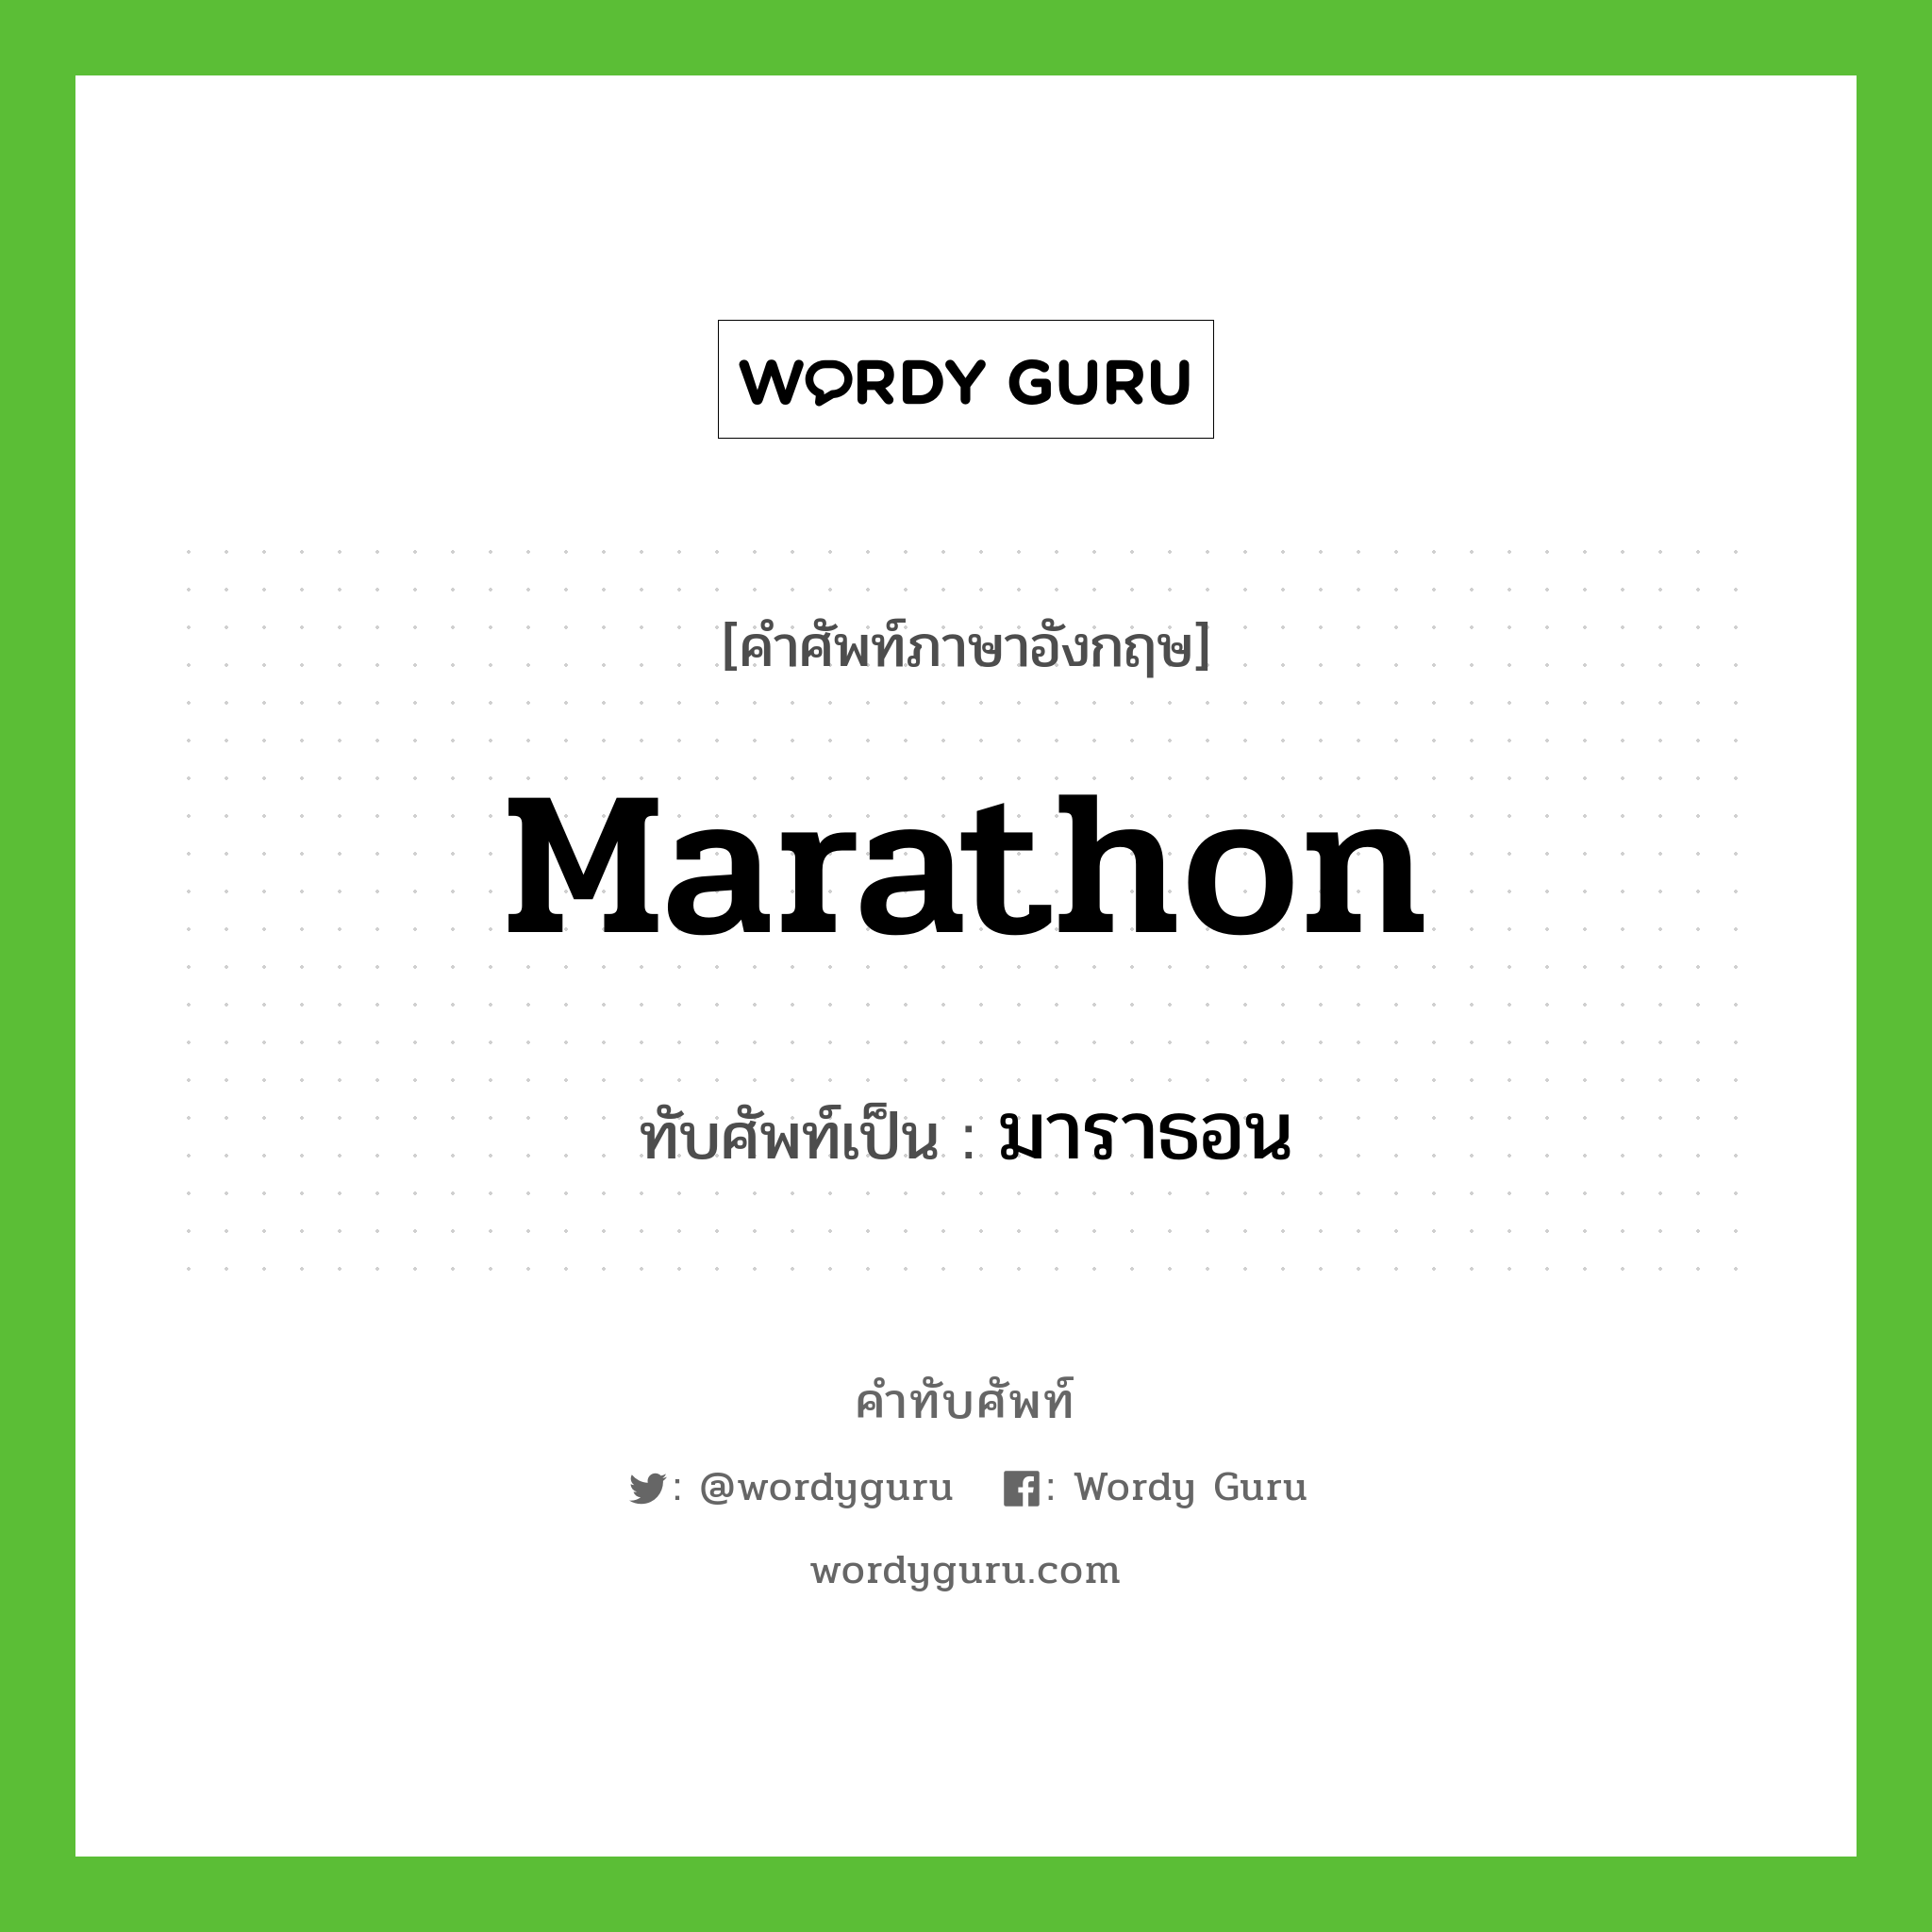 Marathon เขียนเป็นคำไทยว่าอะไร?, คำศัพท์ภาษาอังกฤษ Marathon ทับศัพท์เป็น มาราธอน